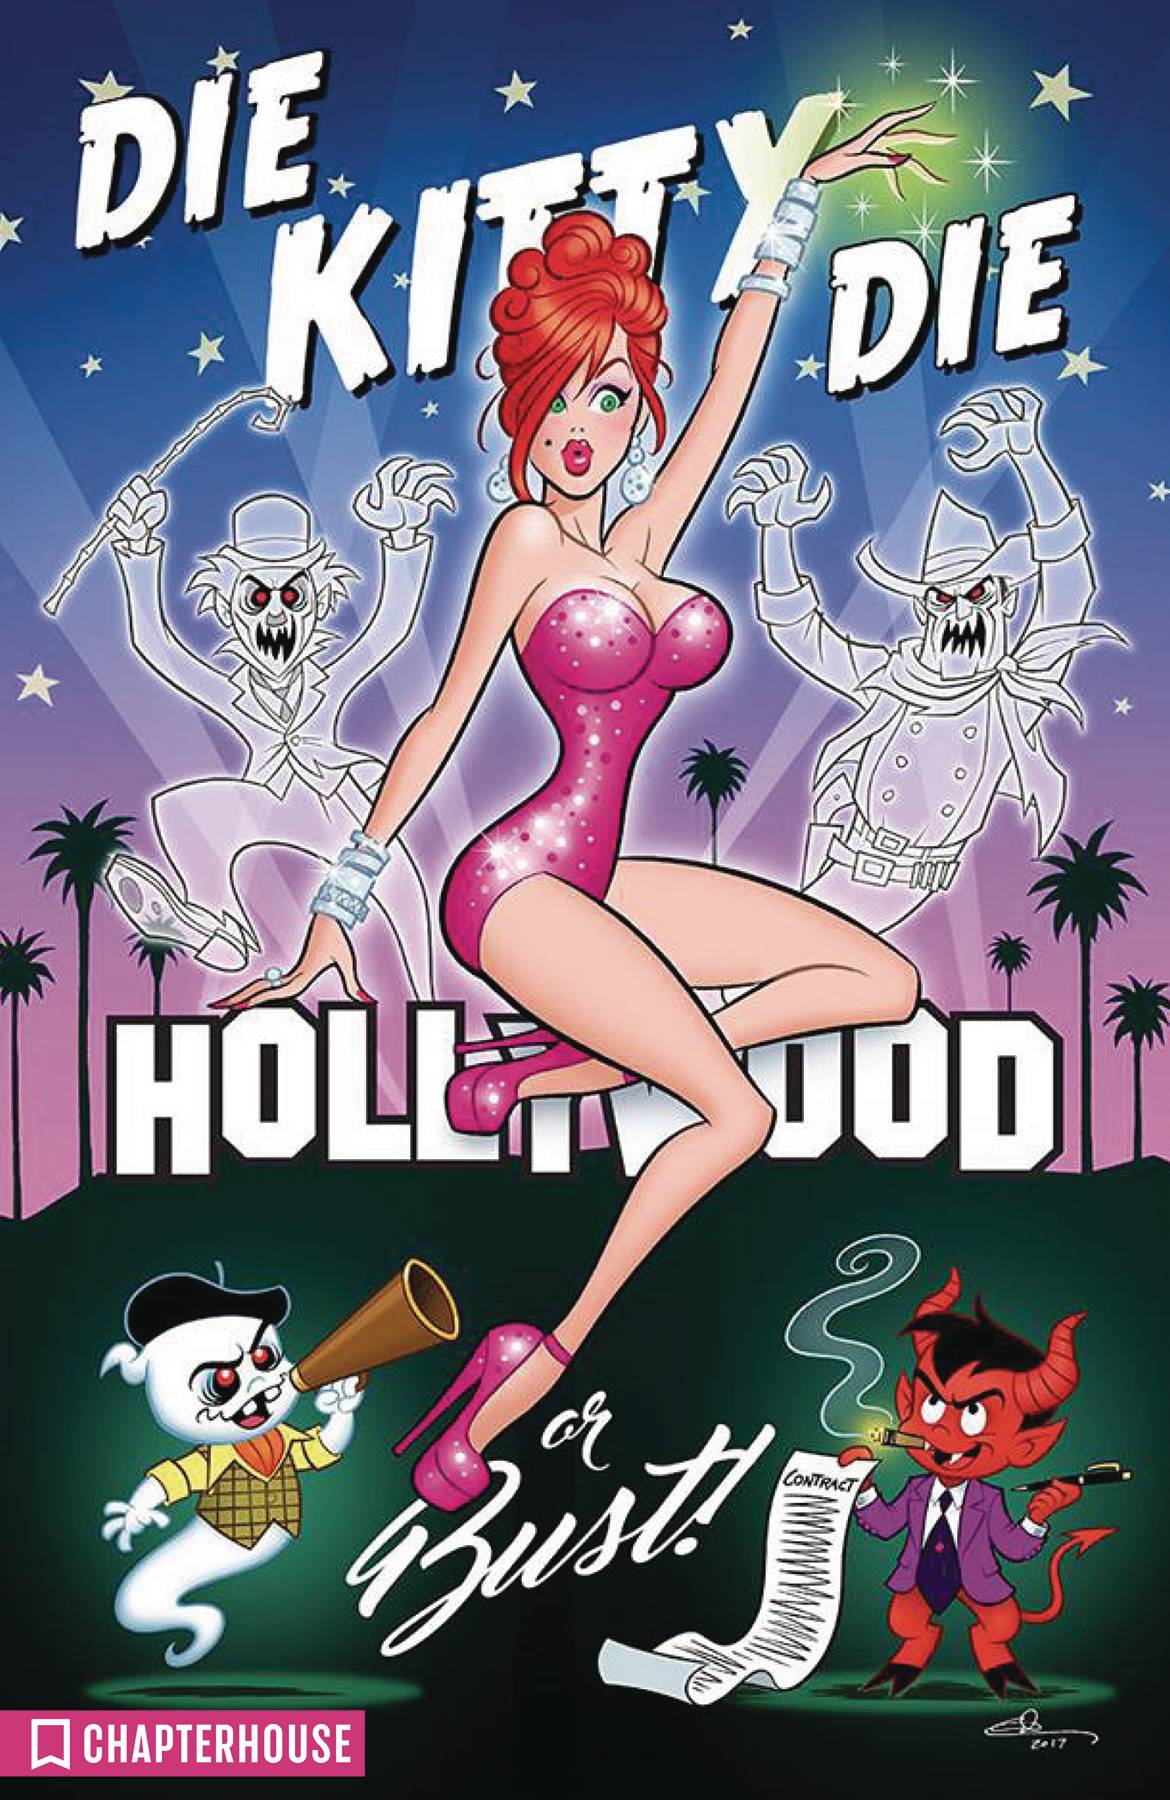 Die Kitty Die Hollywood Or Bust Hardcover